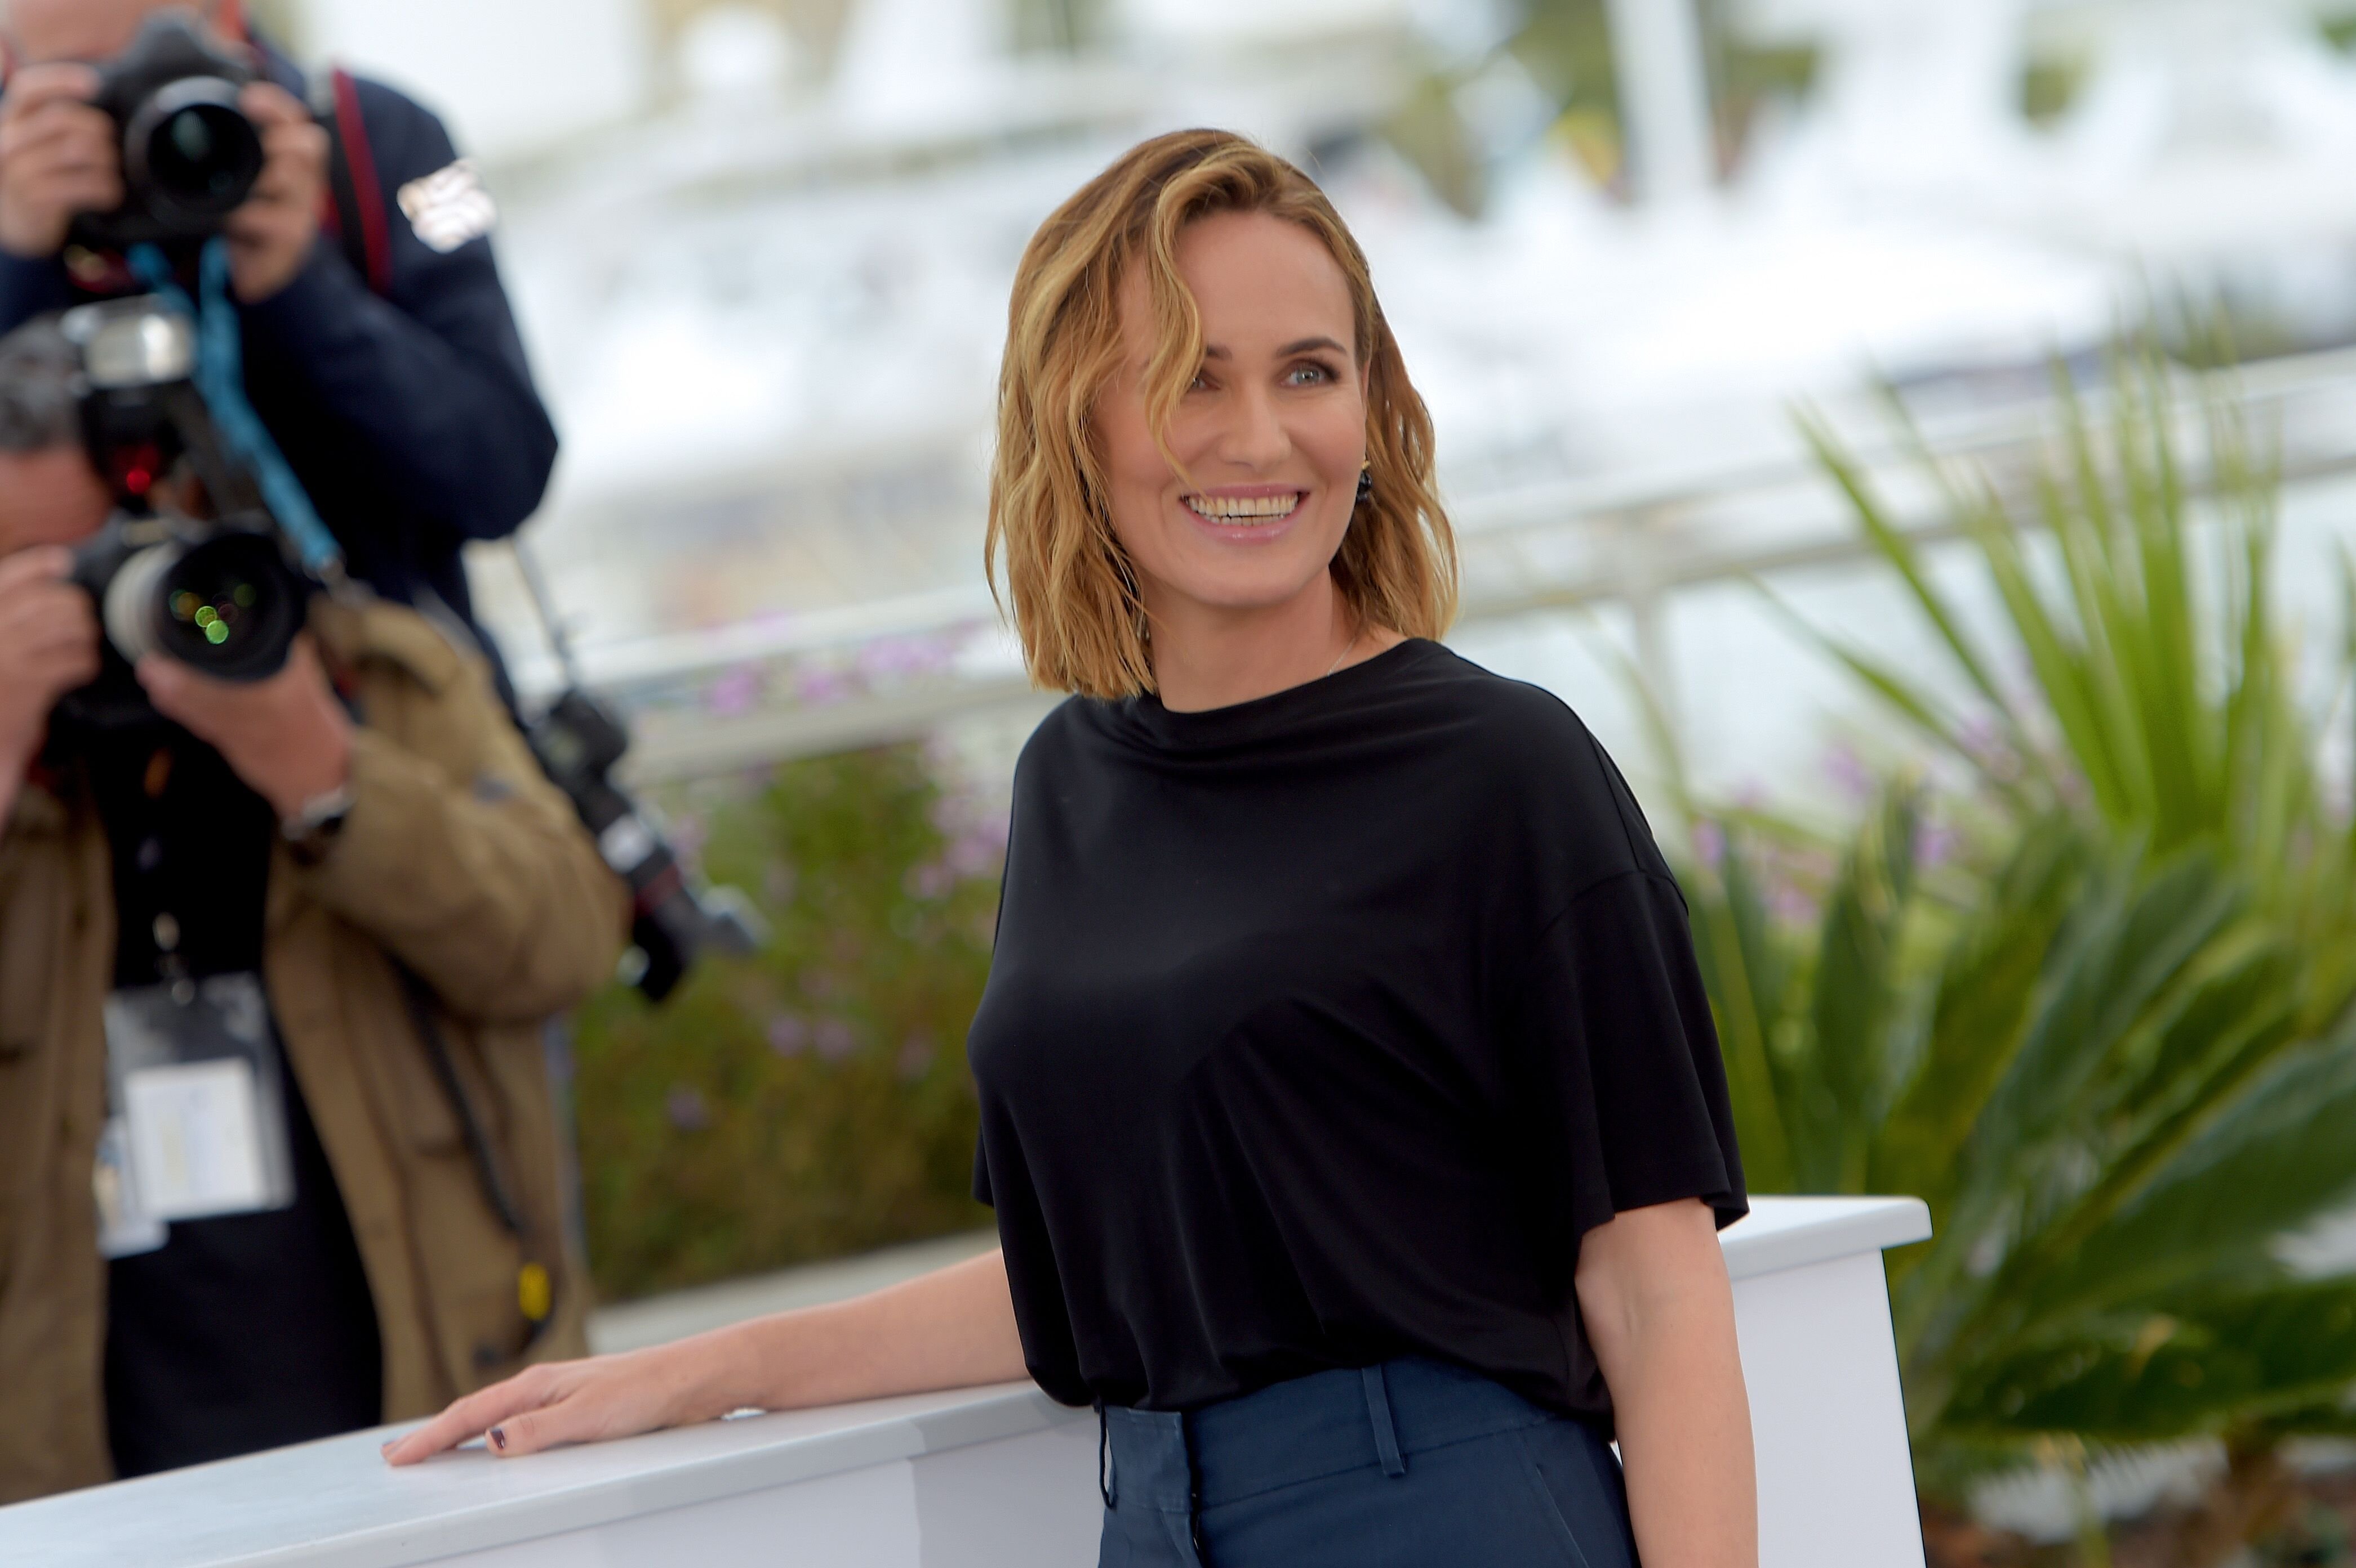  Judith Godreche assiste au Photocall "The Climb" lors du 72e Festival de Cannes le 17 mai 2019 à Cannes, France. | Photo : Getty Images